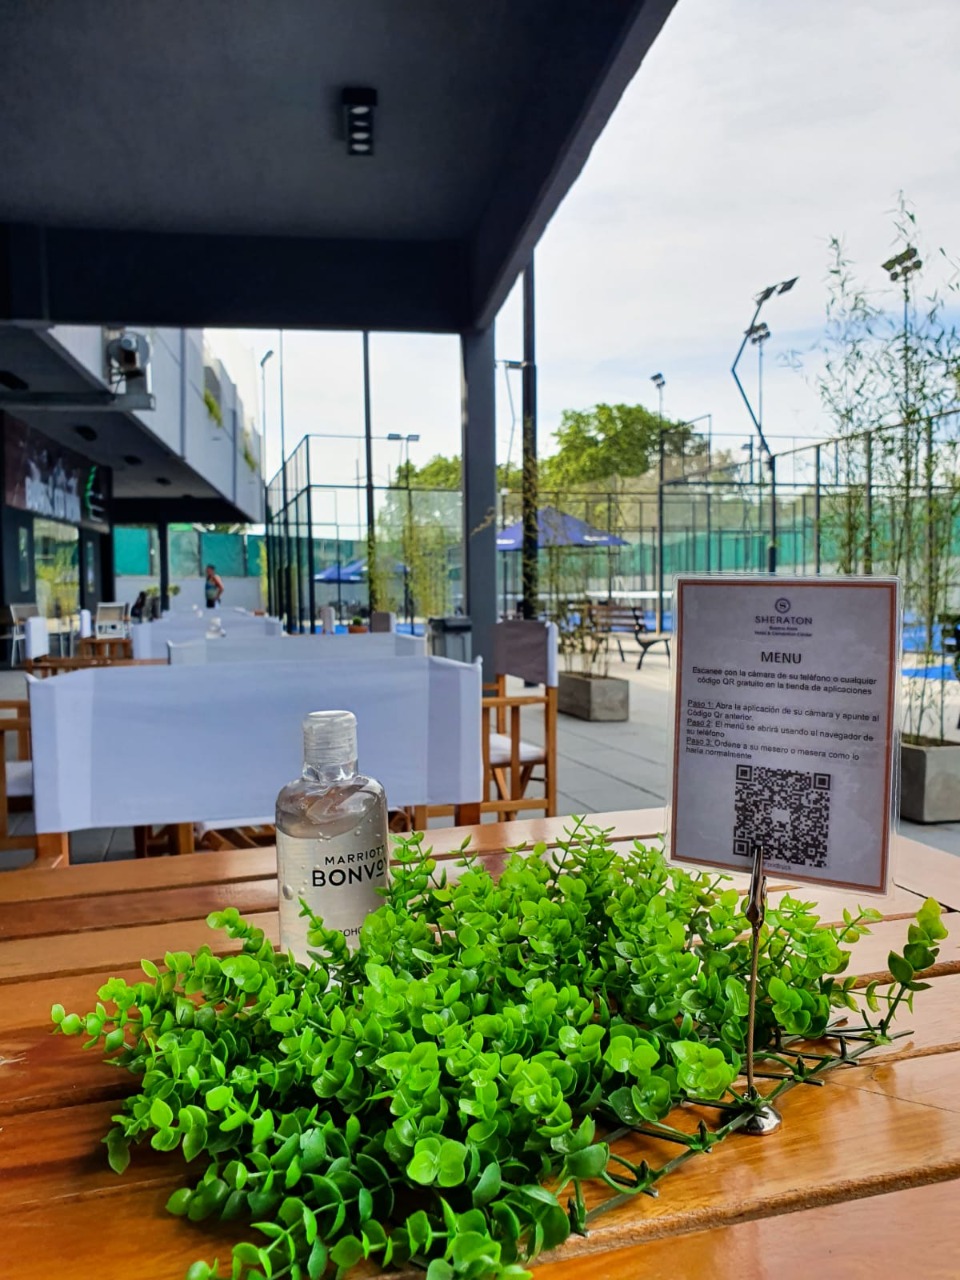 Sheraton Buenos Aires Hotel lanzó su nuevo proyecto Lasaigues padel y lo celebró con un espectacular torneo de la mano de Marriot Bonvoy